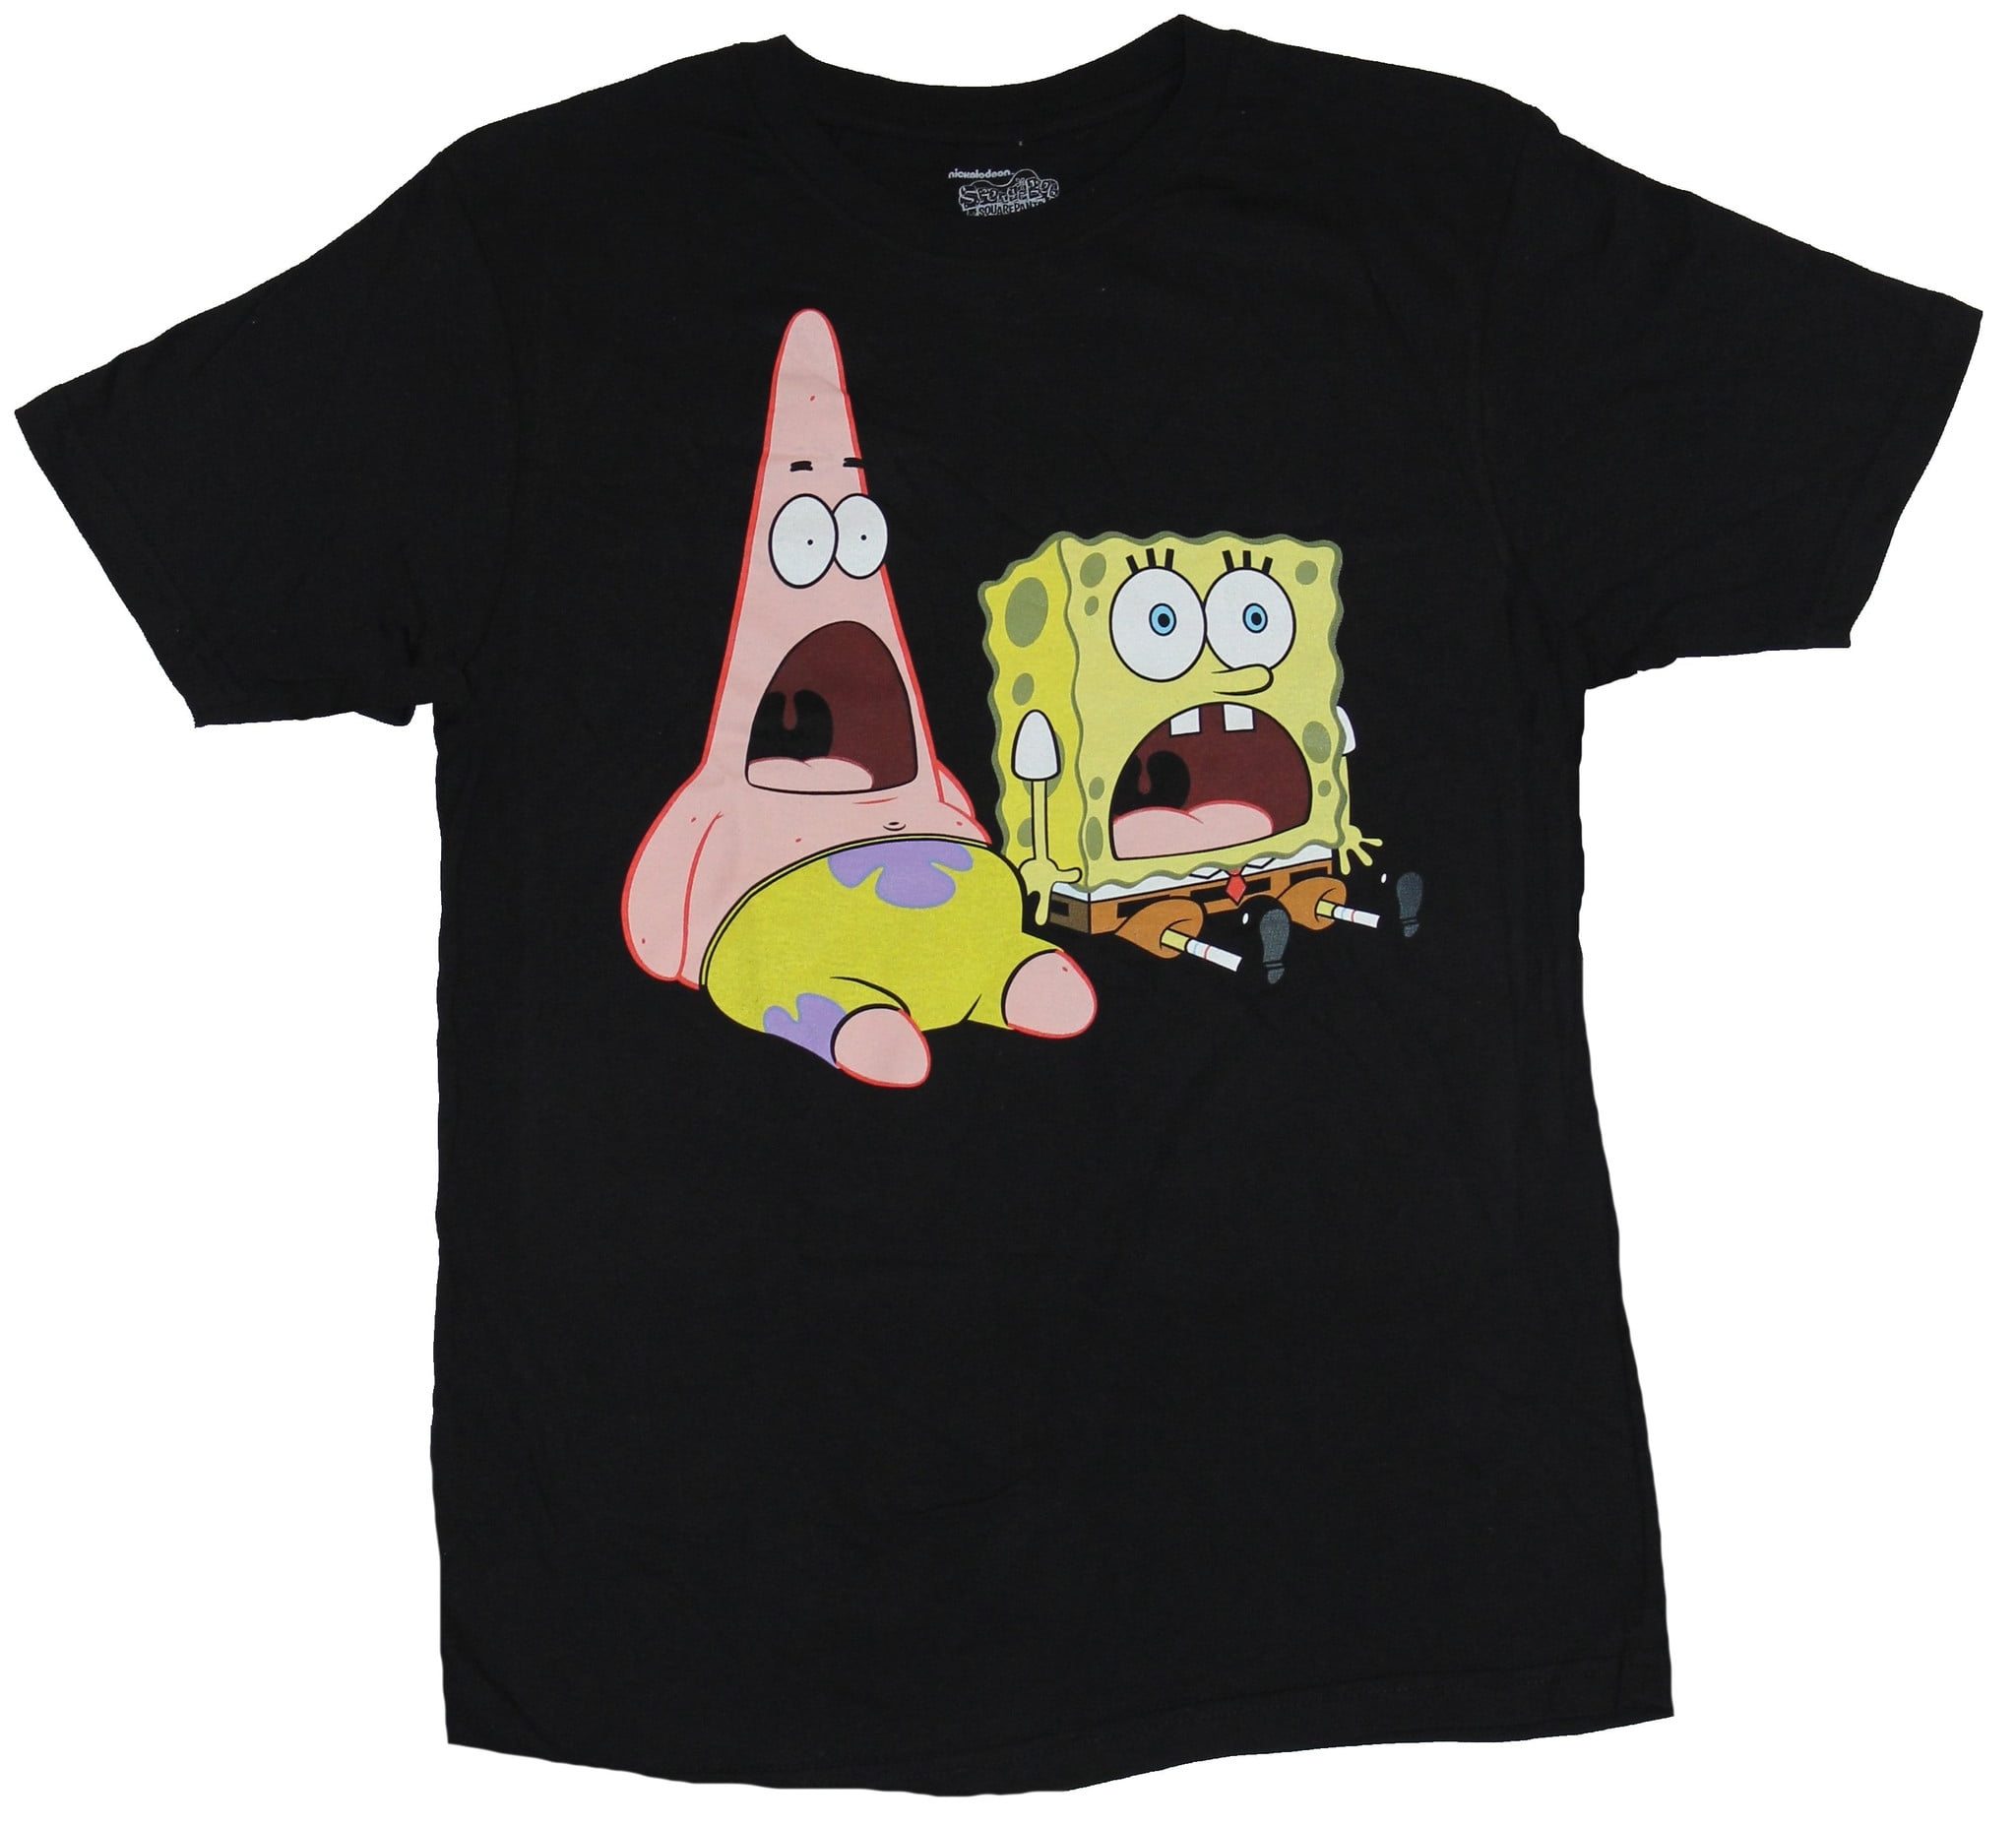 In My Parents Basement - Spongebob Squarepants Mens T-Shirt - Screaming ...